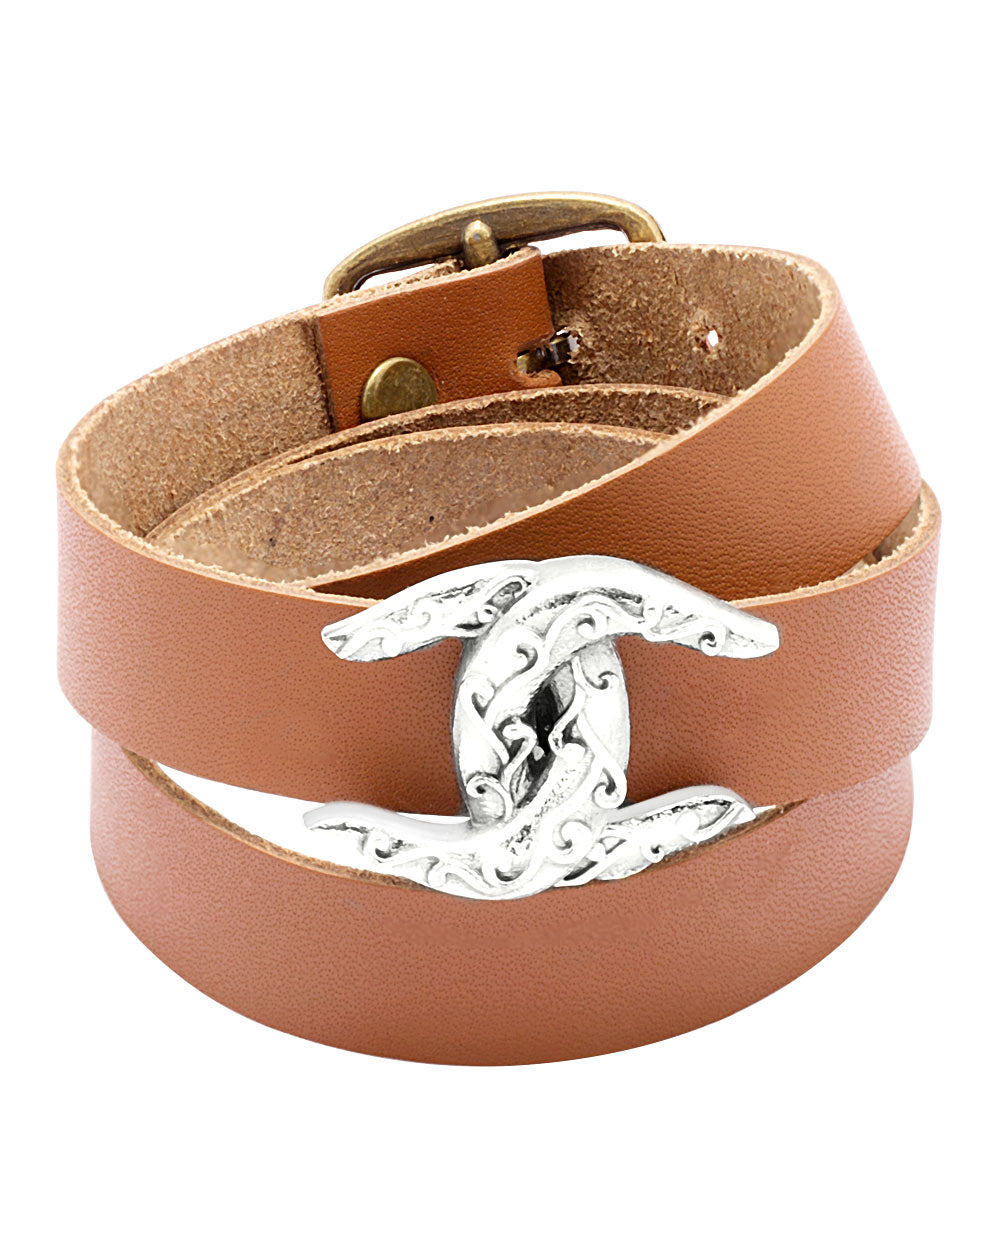 Claw Inspired leather wrap Bracelet